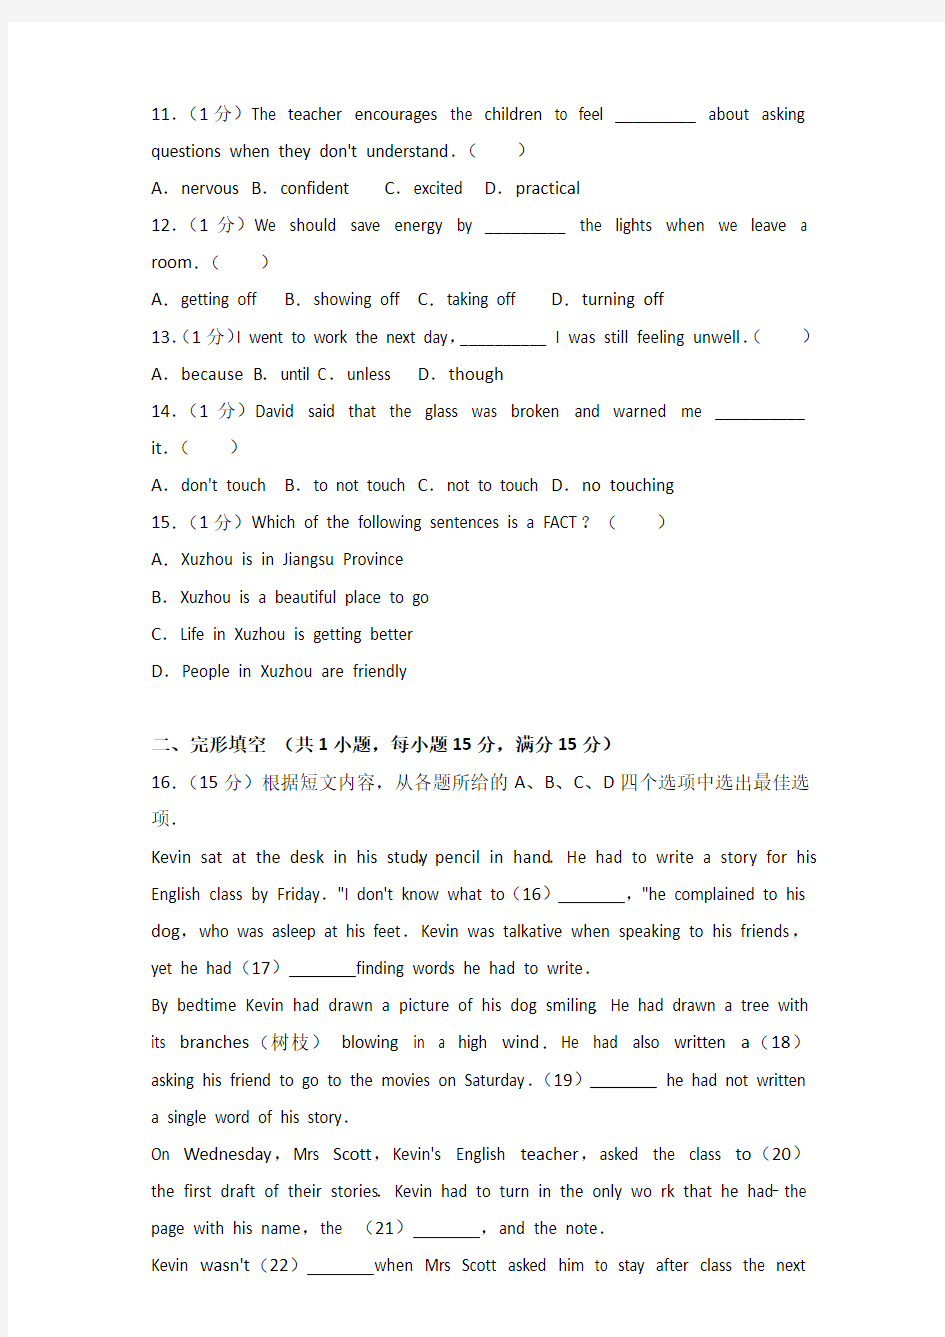 2016年江苏省徐州市中考英语试卷和答案